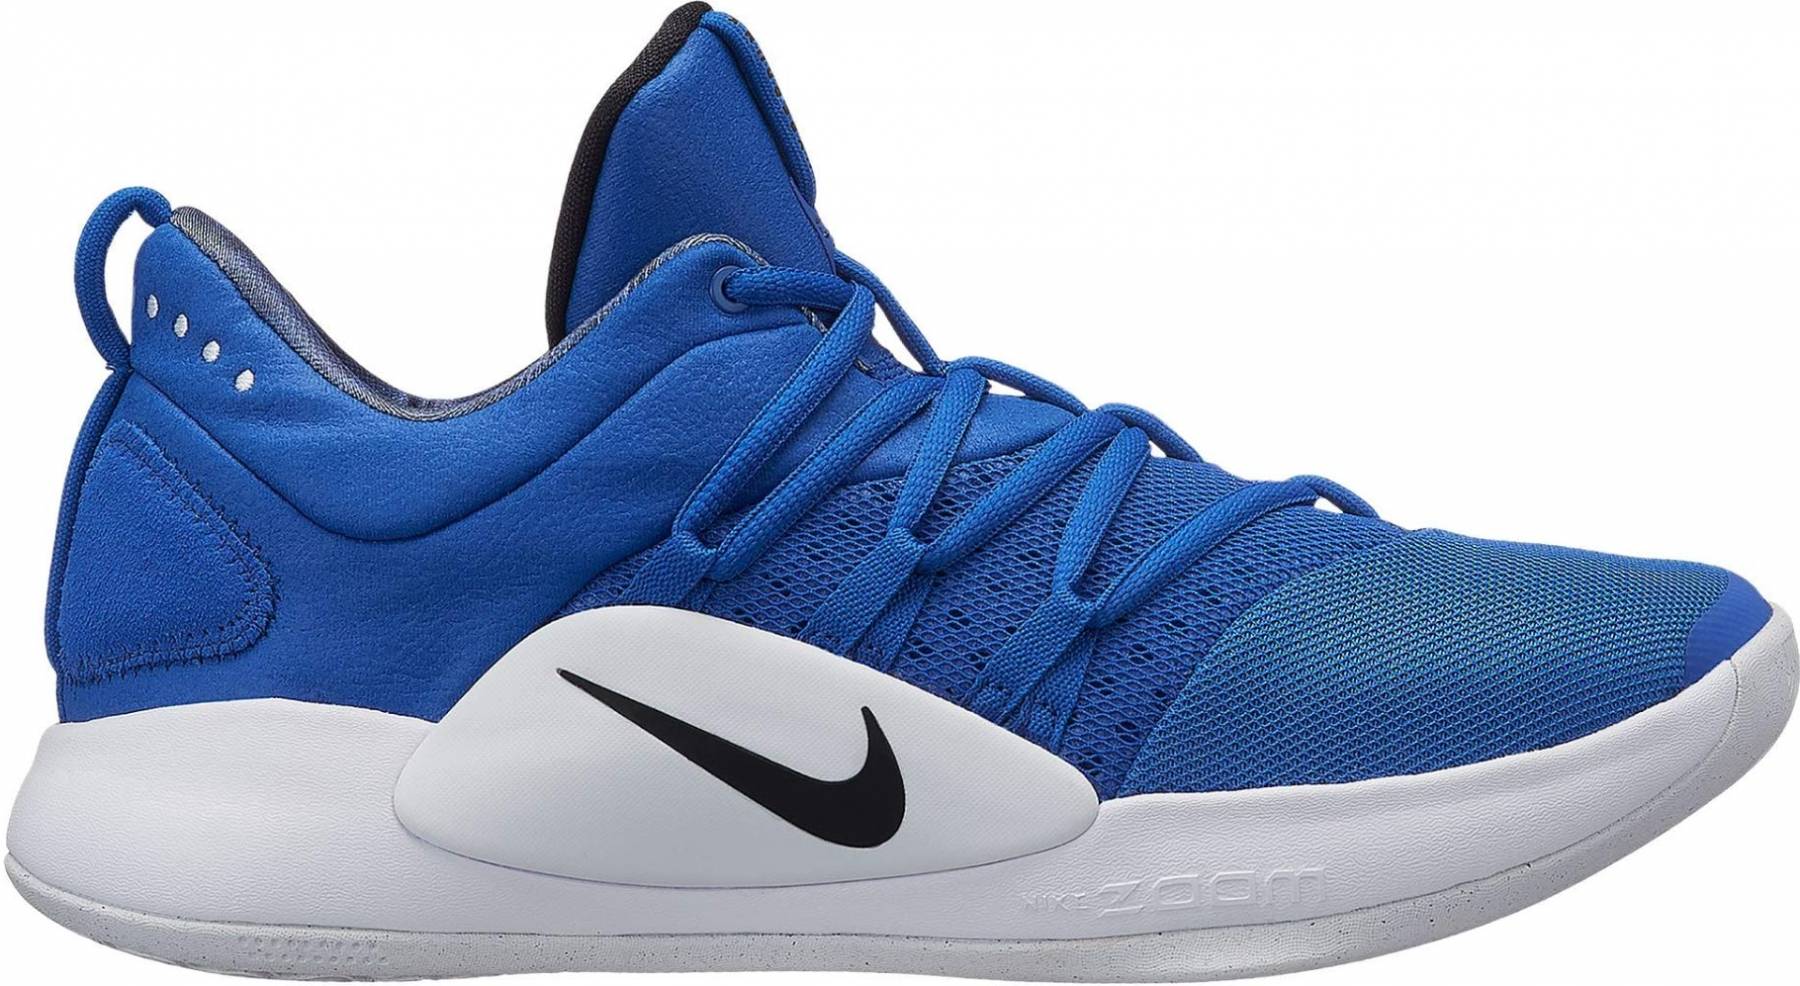 royal blue nike basketball shoes